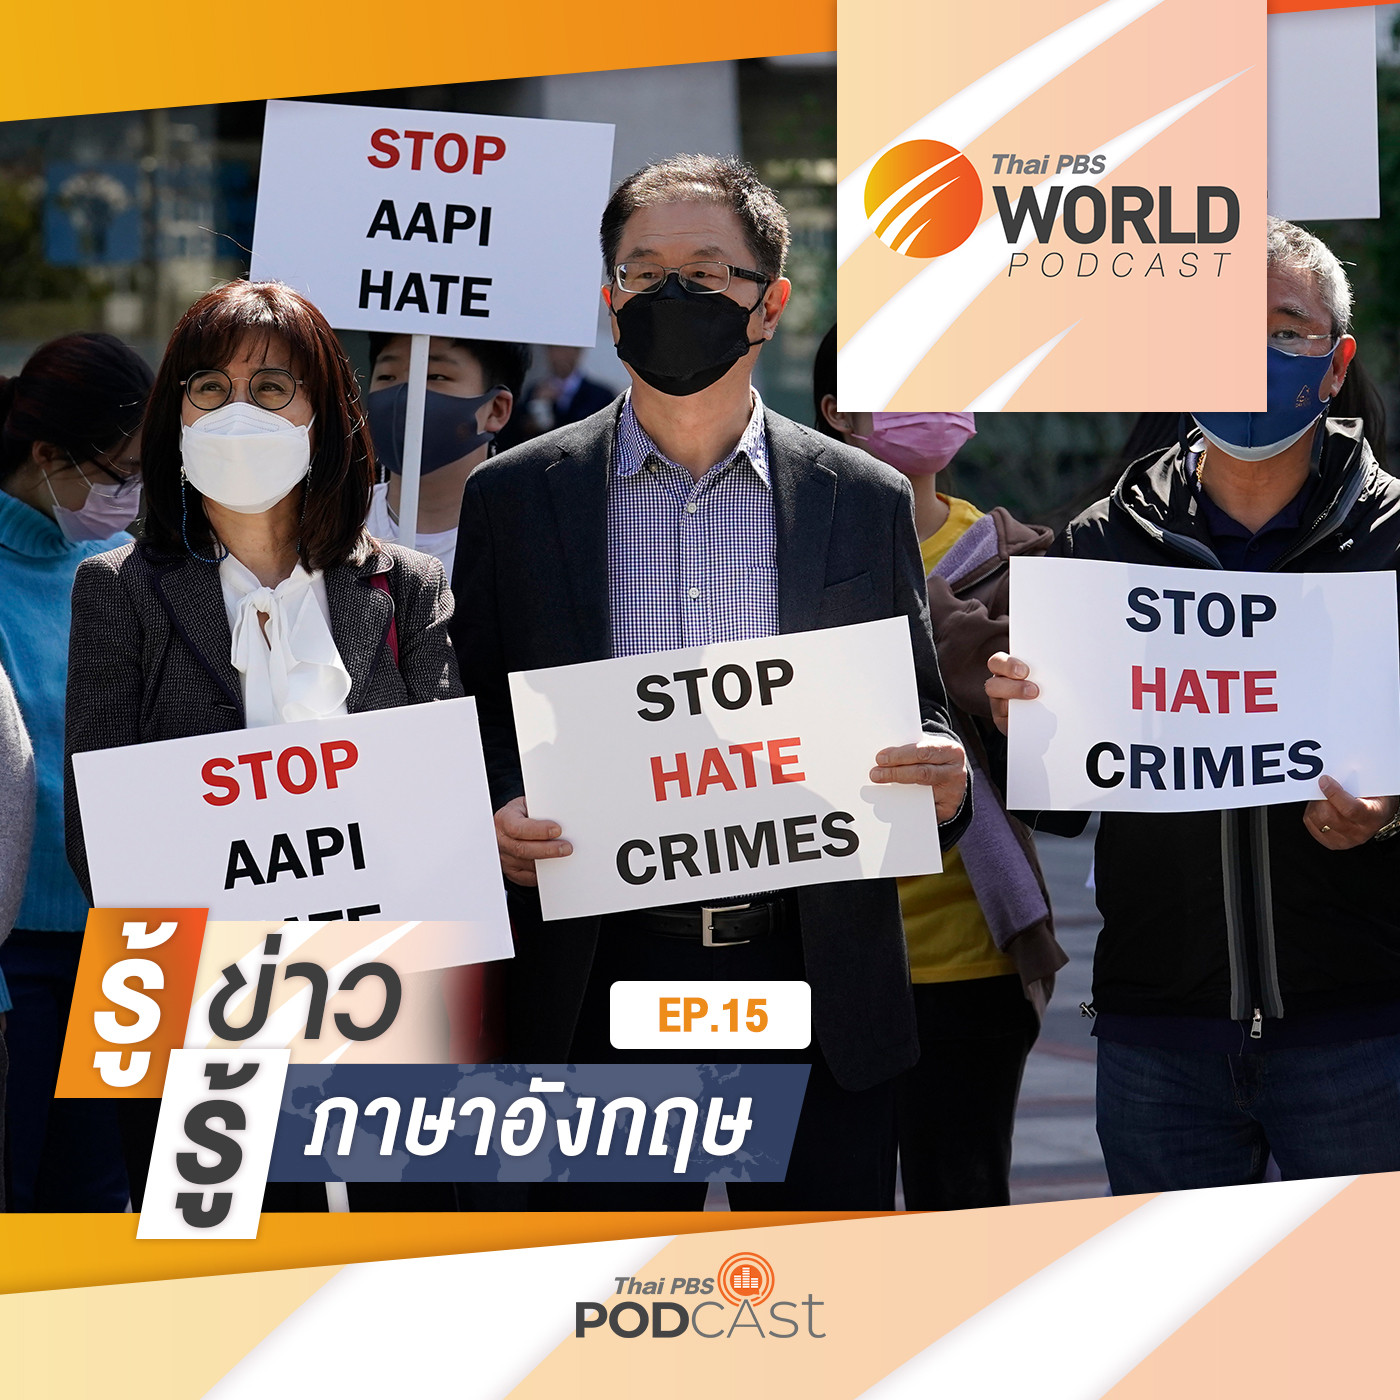 Thai PBS World Podcast - รู้ข่าว รู้ภาษาอังกฤษ EP. 15: รู้ข่าว รู้ภาษาอังกฤษ - กระแสต่อต้านคนเชื้อสายเอเชียในสหรัฐฯ สู่การก่อความรุนแรง